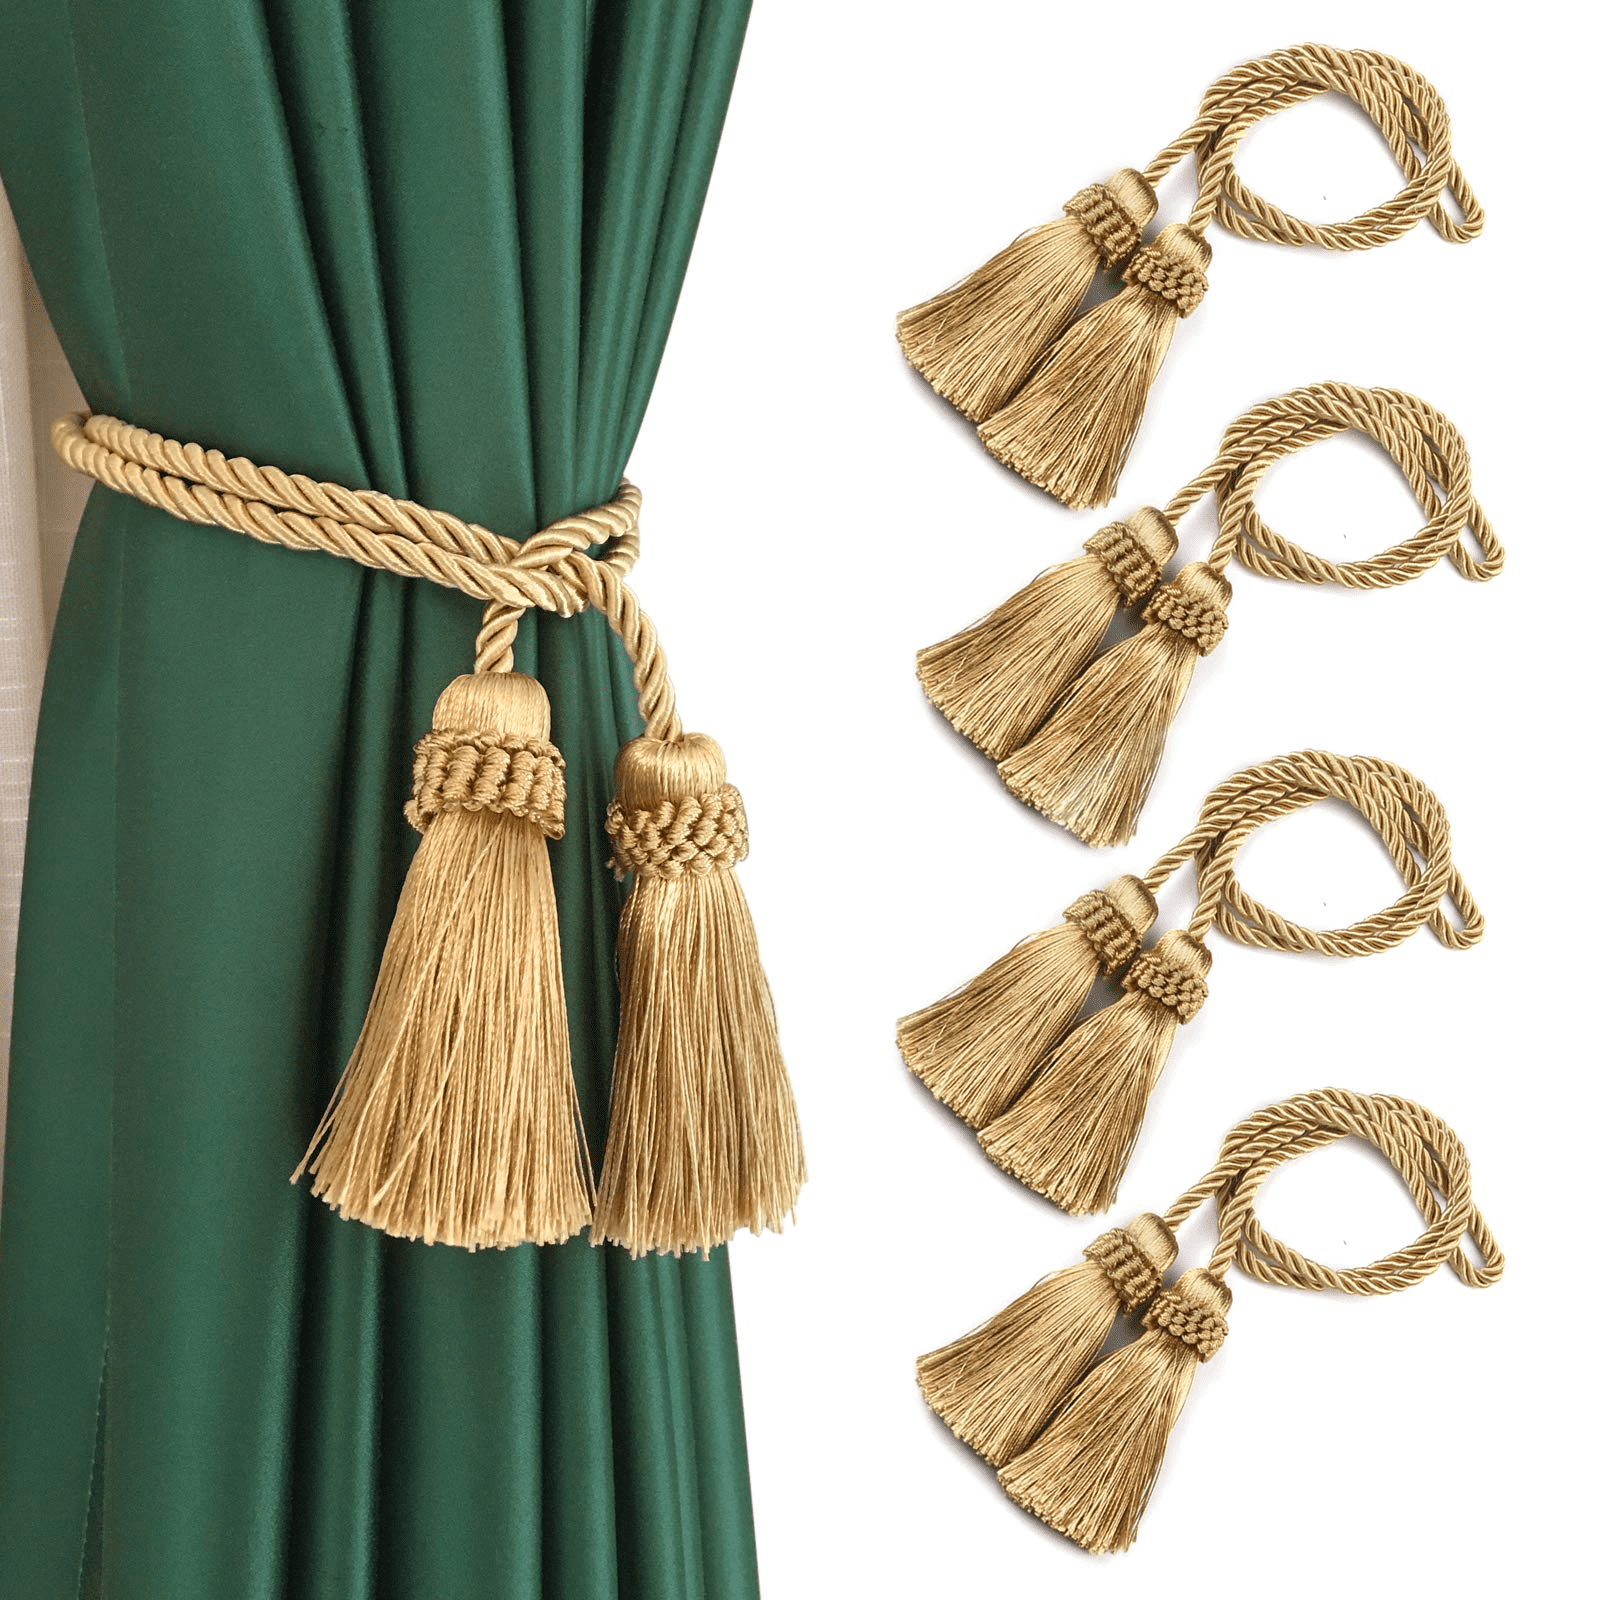 Cotton tasselled tieback ropes with single tassel 2 Curtain tassel tie backs 